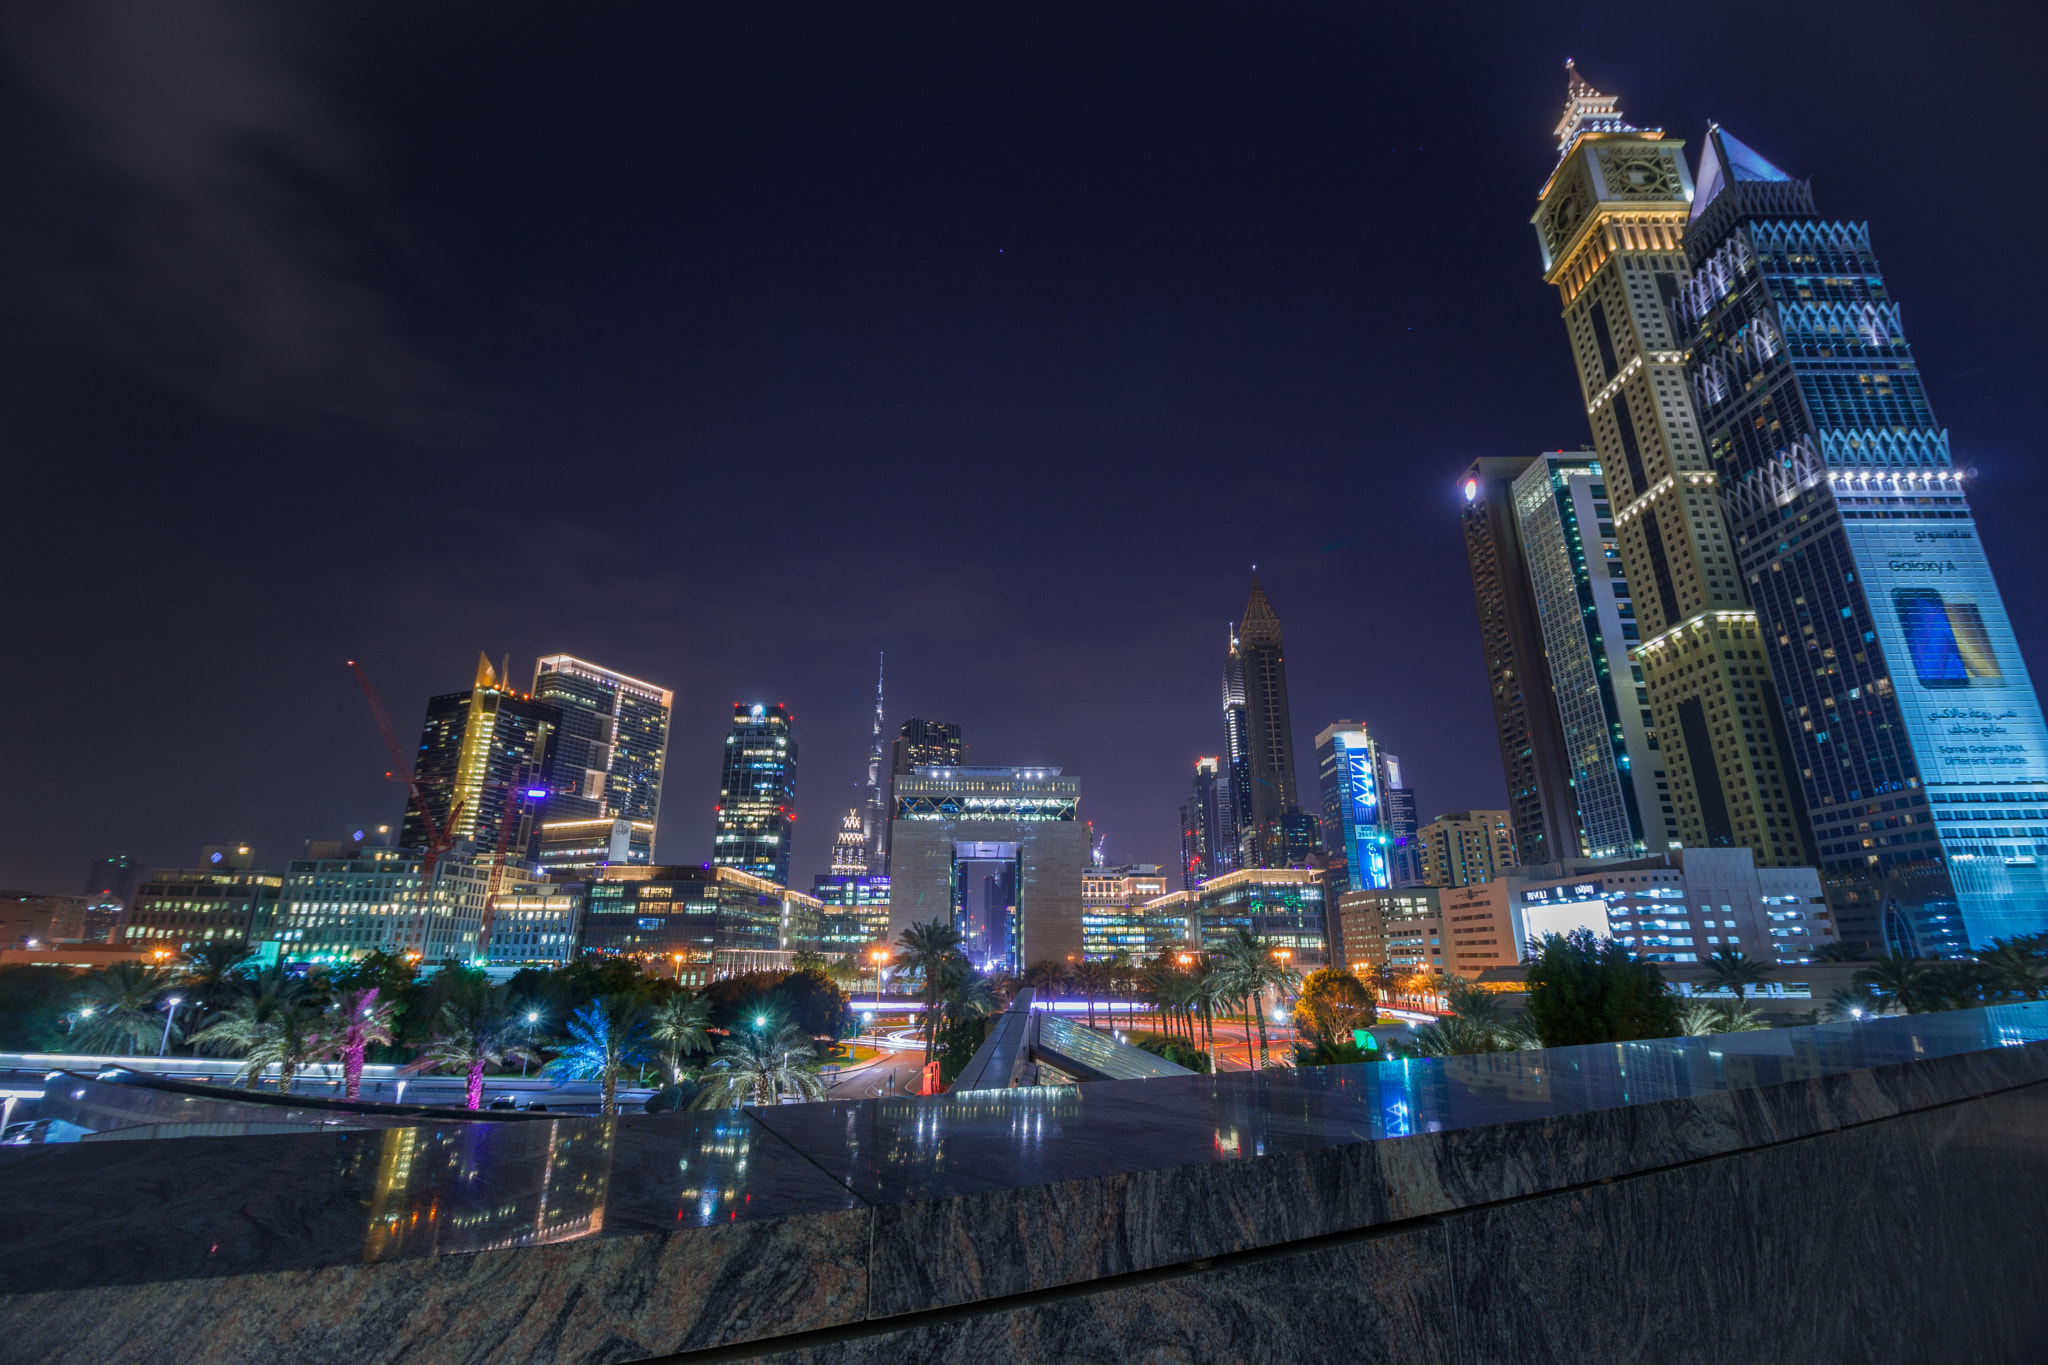 Sony a6000 sample photo. Dubai skyline photography